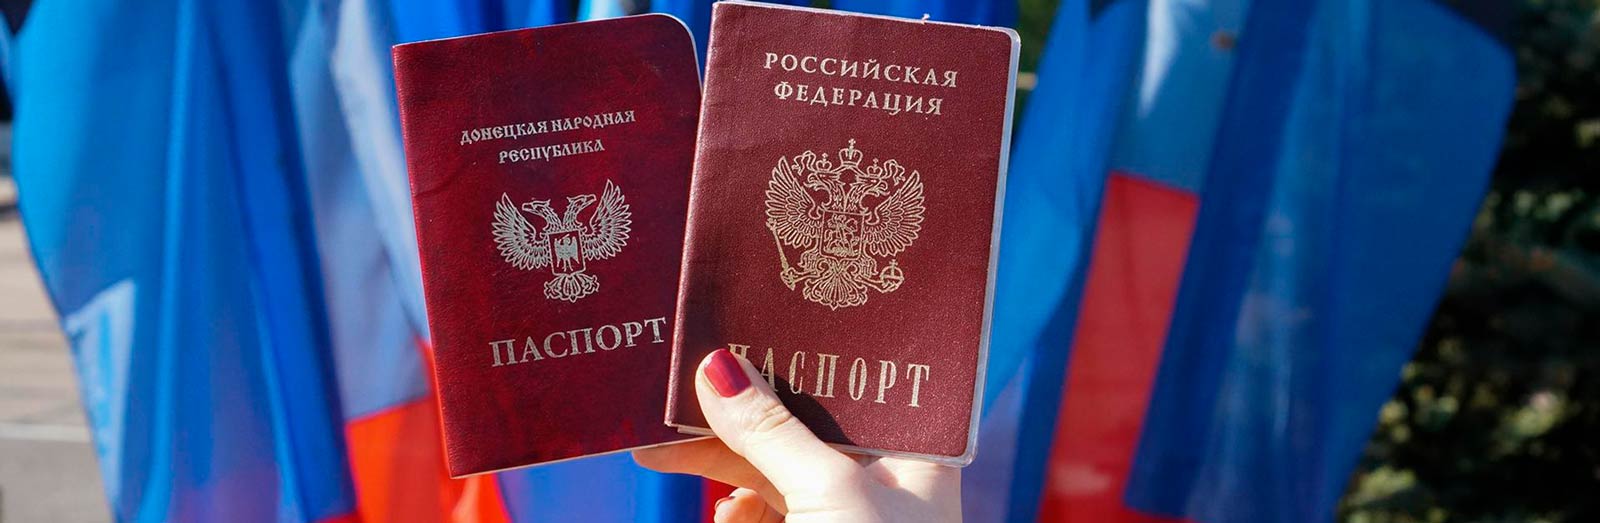 Паспортизация по-русски: как это повлияет на перспективы возвращения оккупированного Донбасса